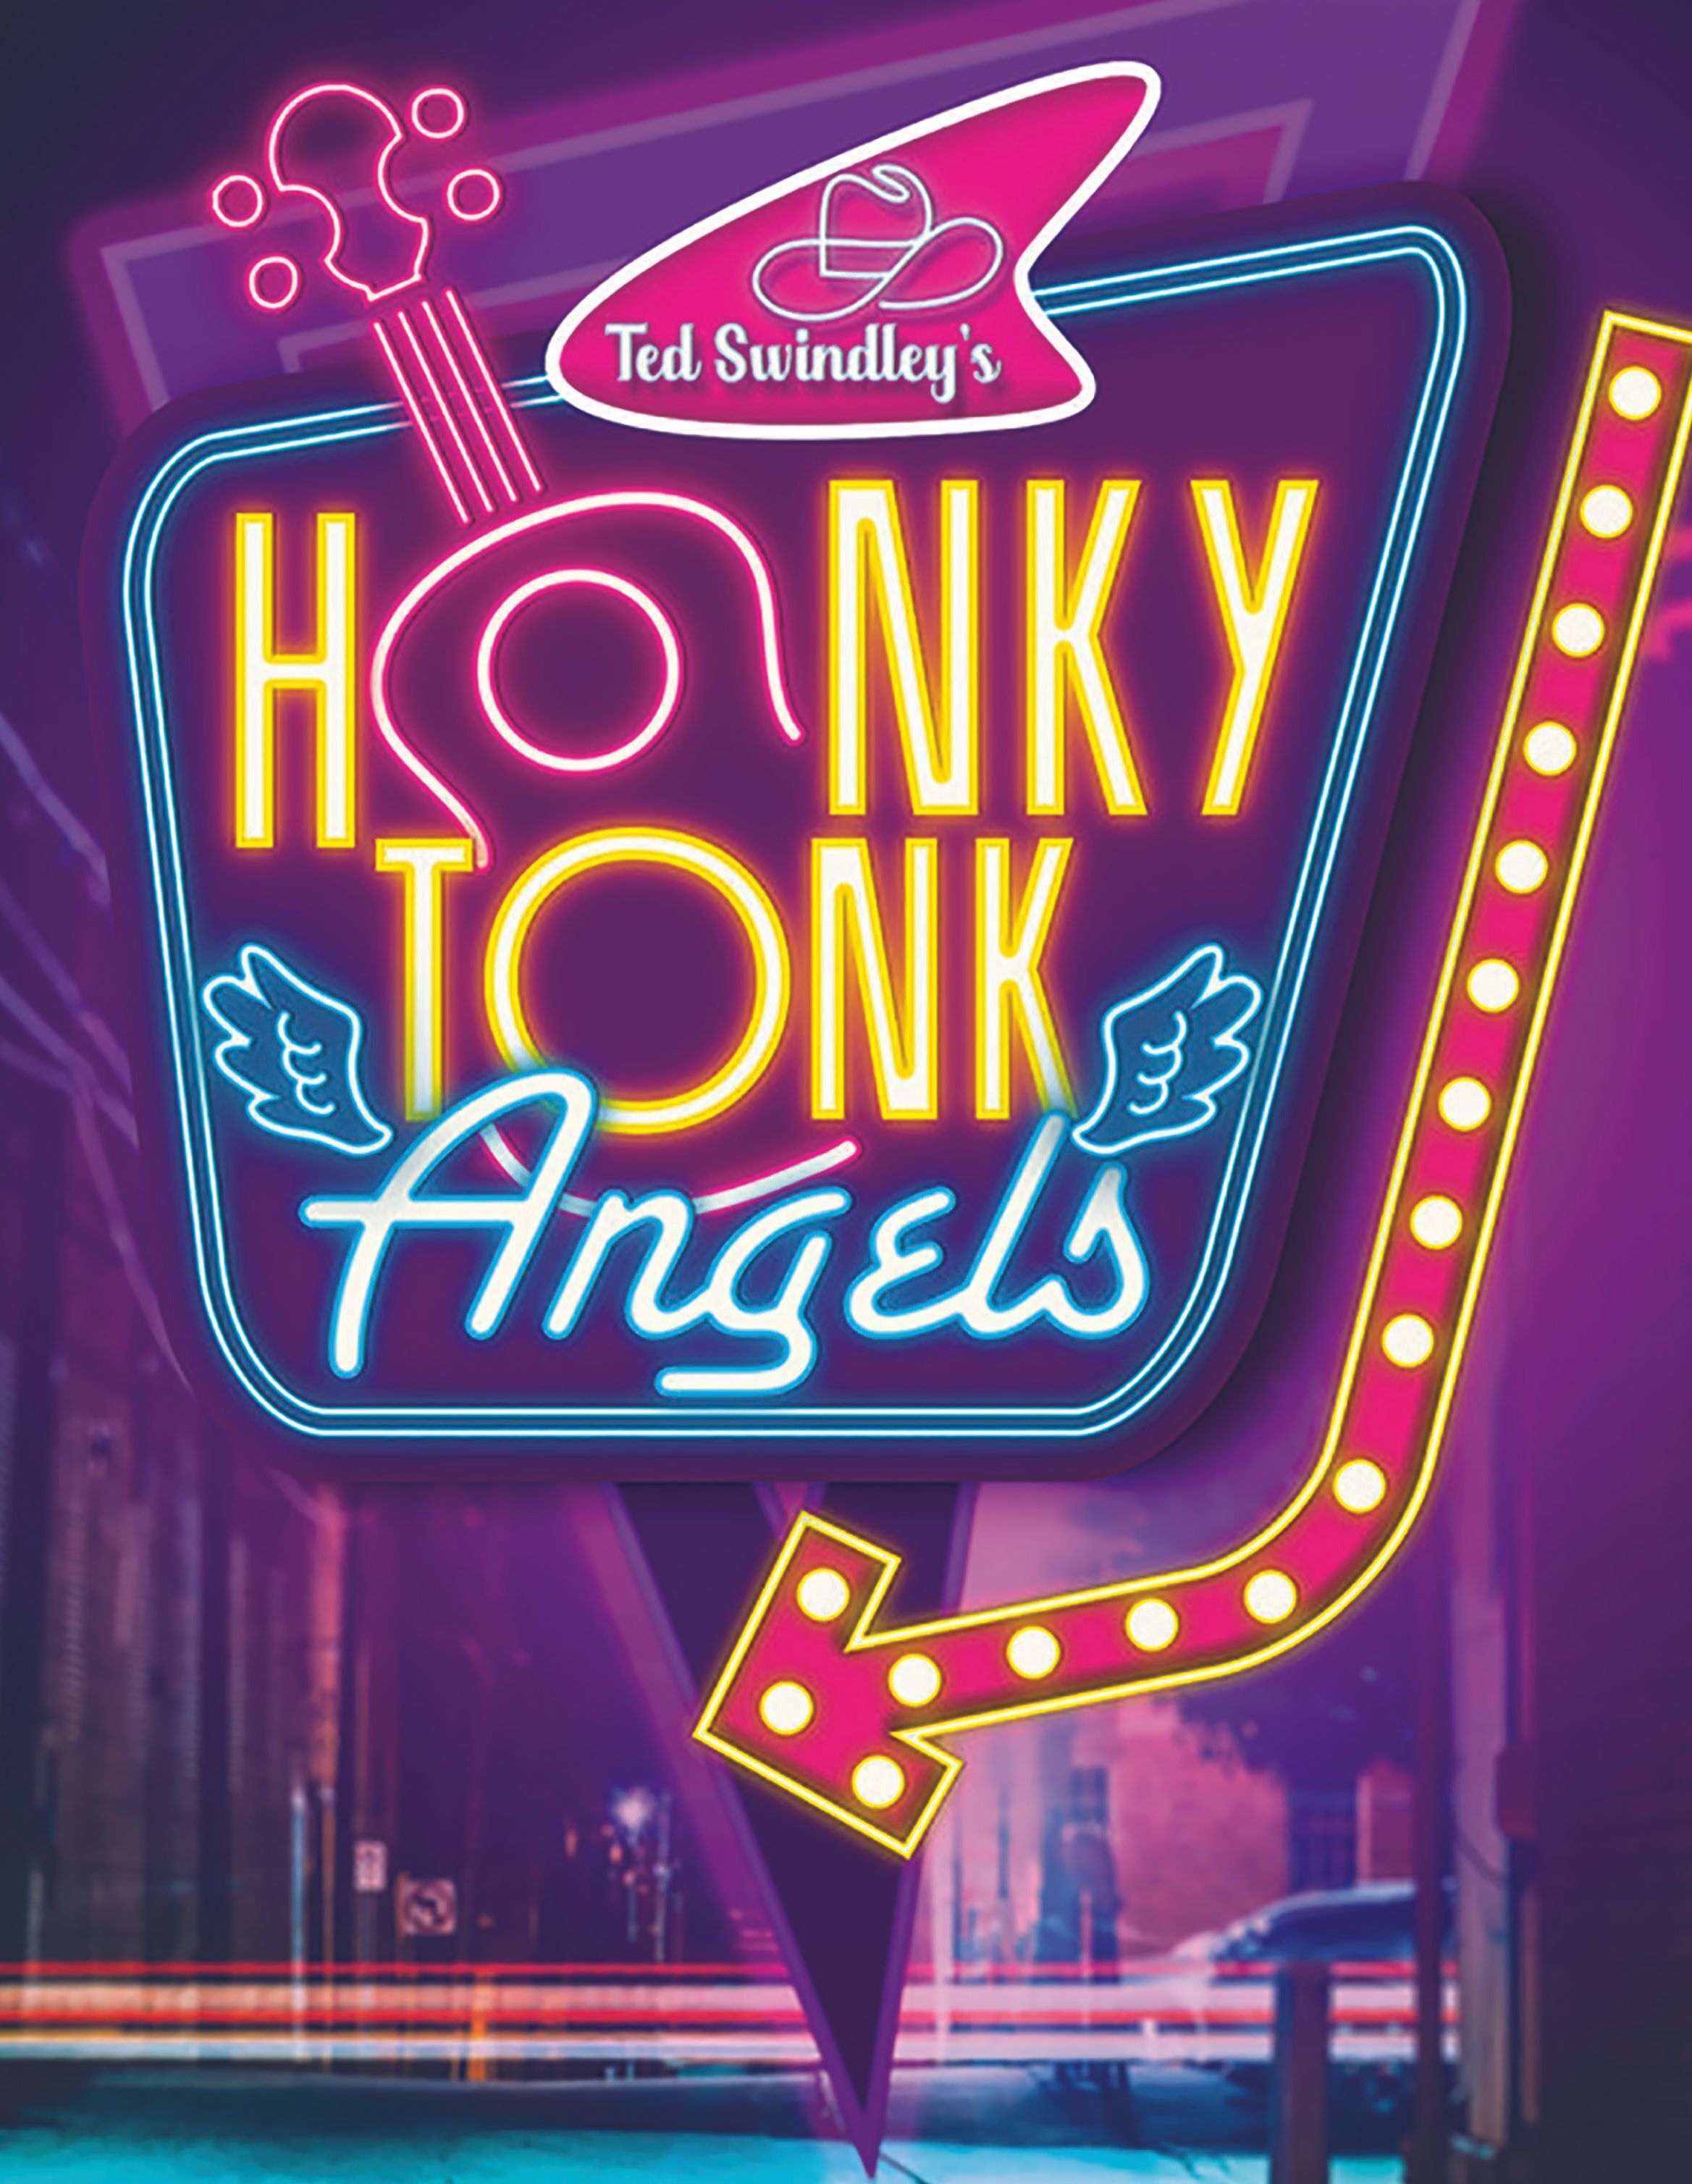 Ted Swindley's Honky Tonk Angels